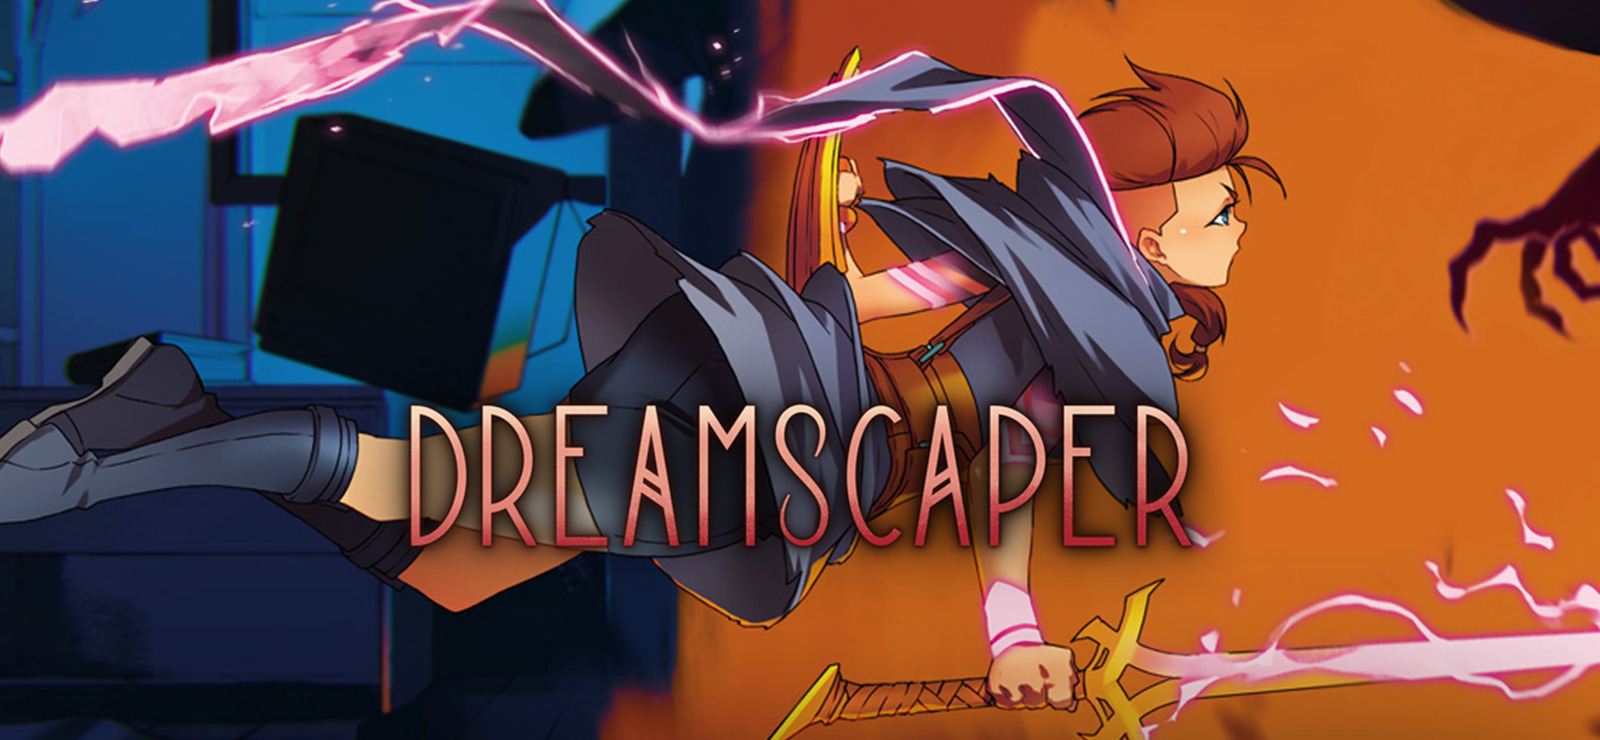 free Dreamscaper